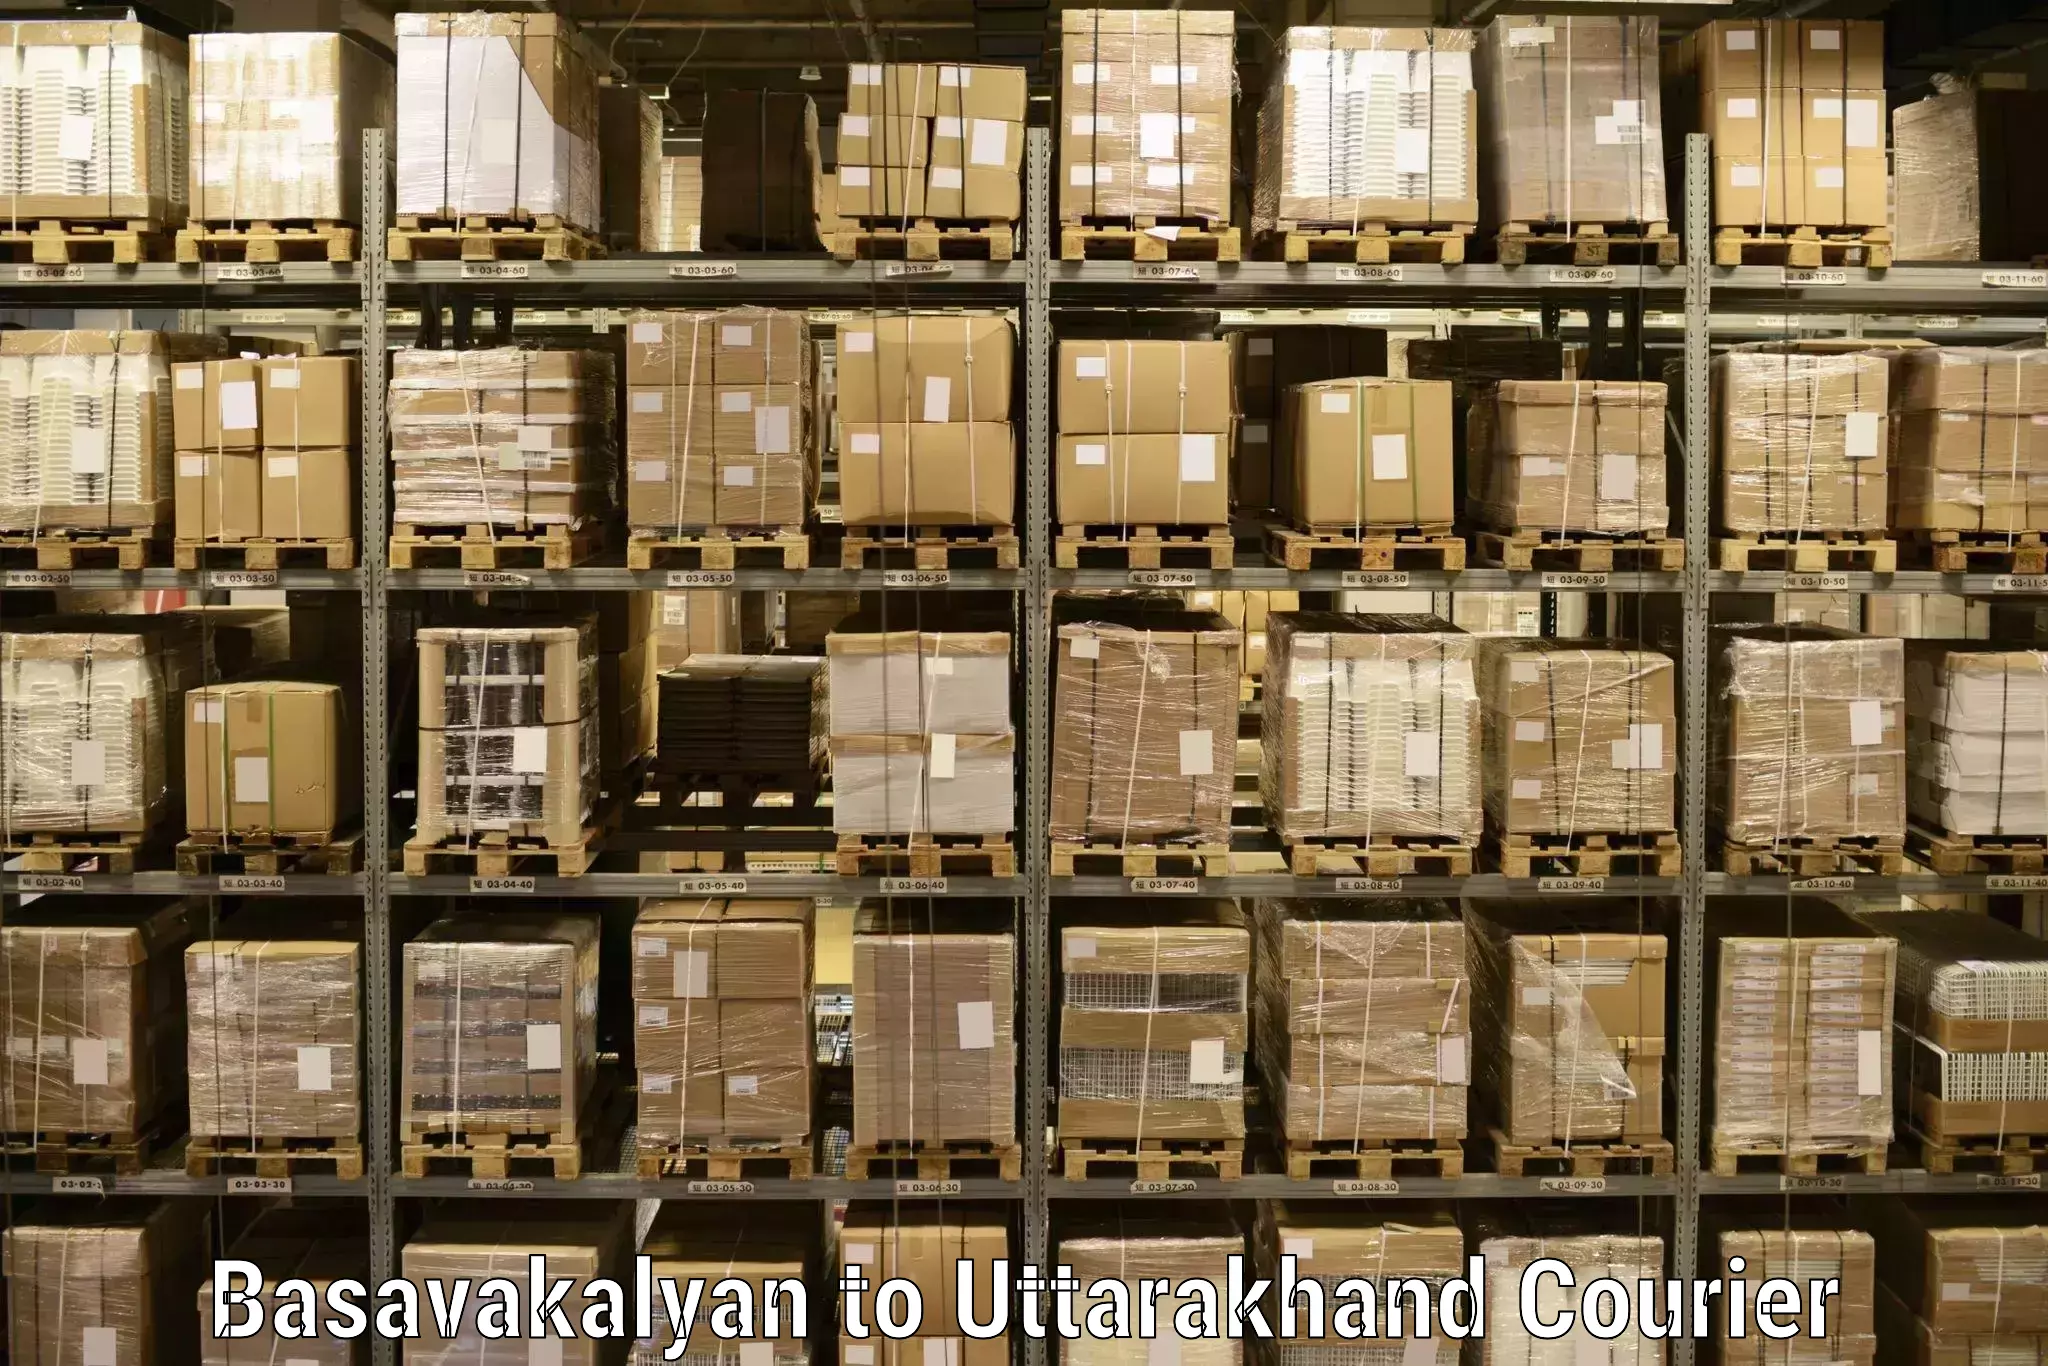 Logistics management Basavakalyan to Someshwar